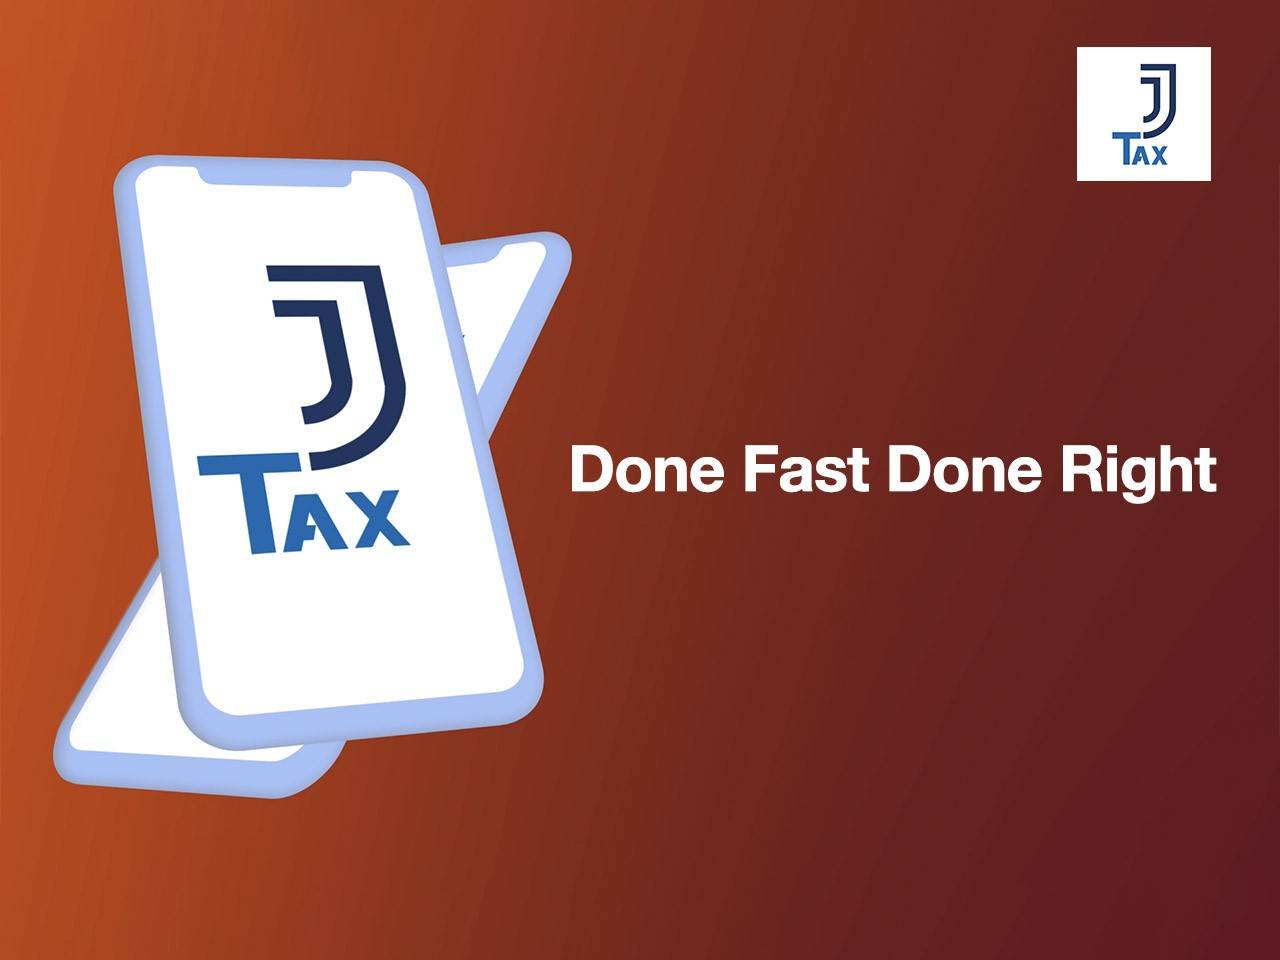 Award winning JJ Tax App reaches a milestone of 30,000 downloads